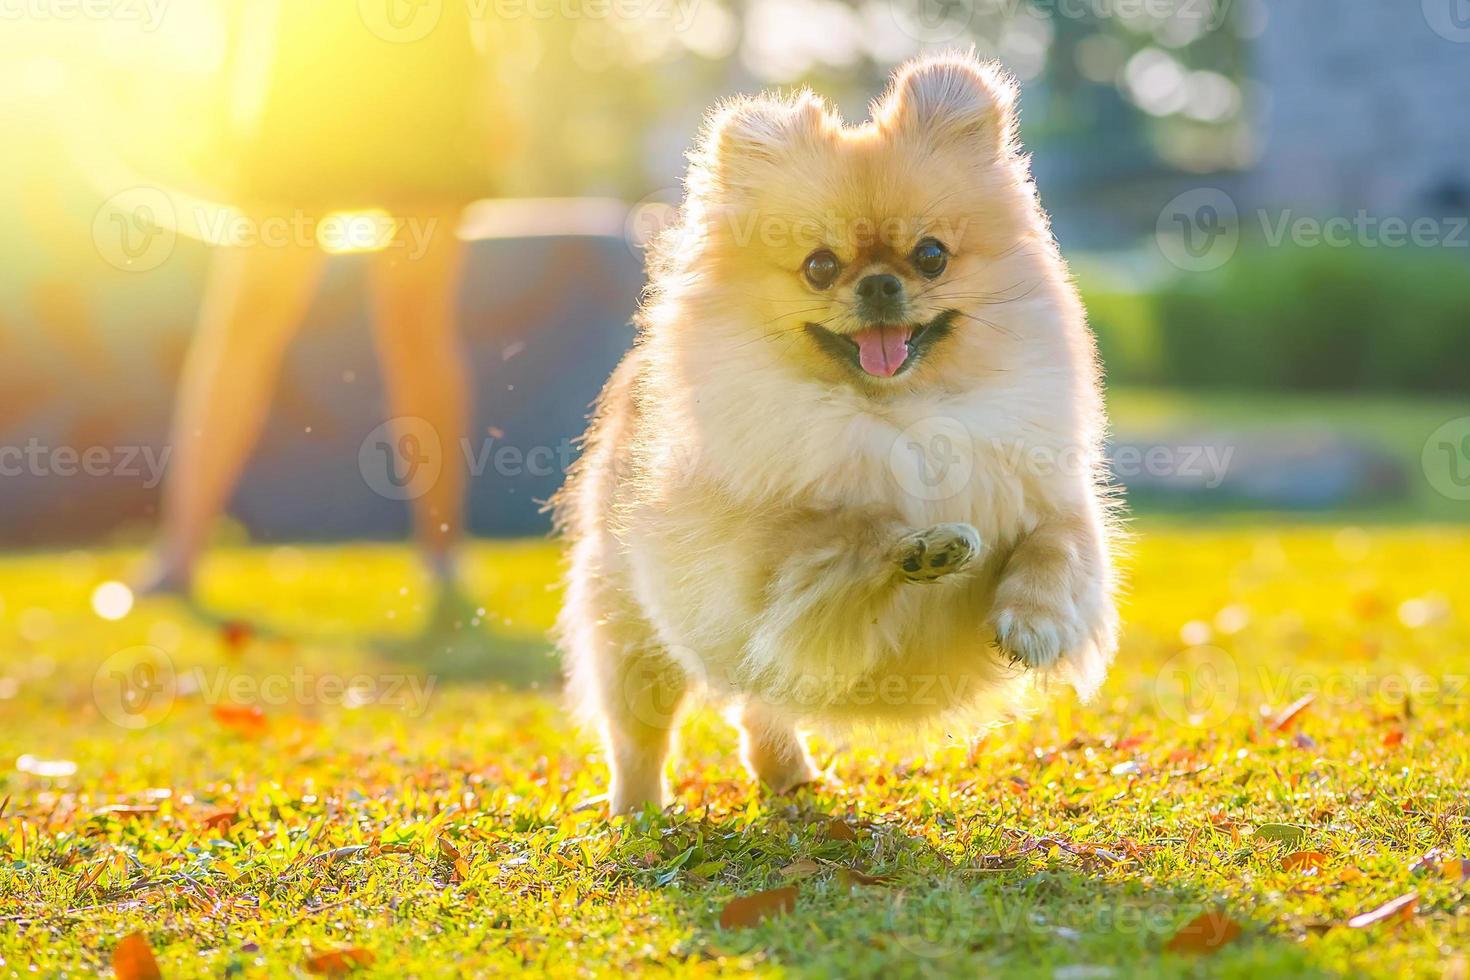 cachorrinho fofo pomeranian raça mista cão pequinês correr na grama com felicidade foto